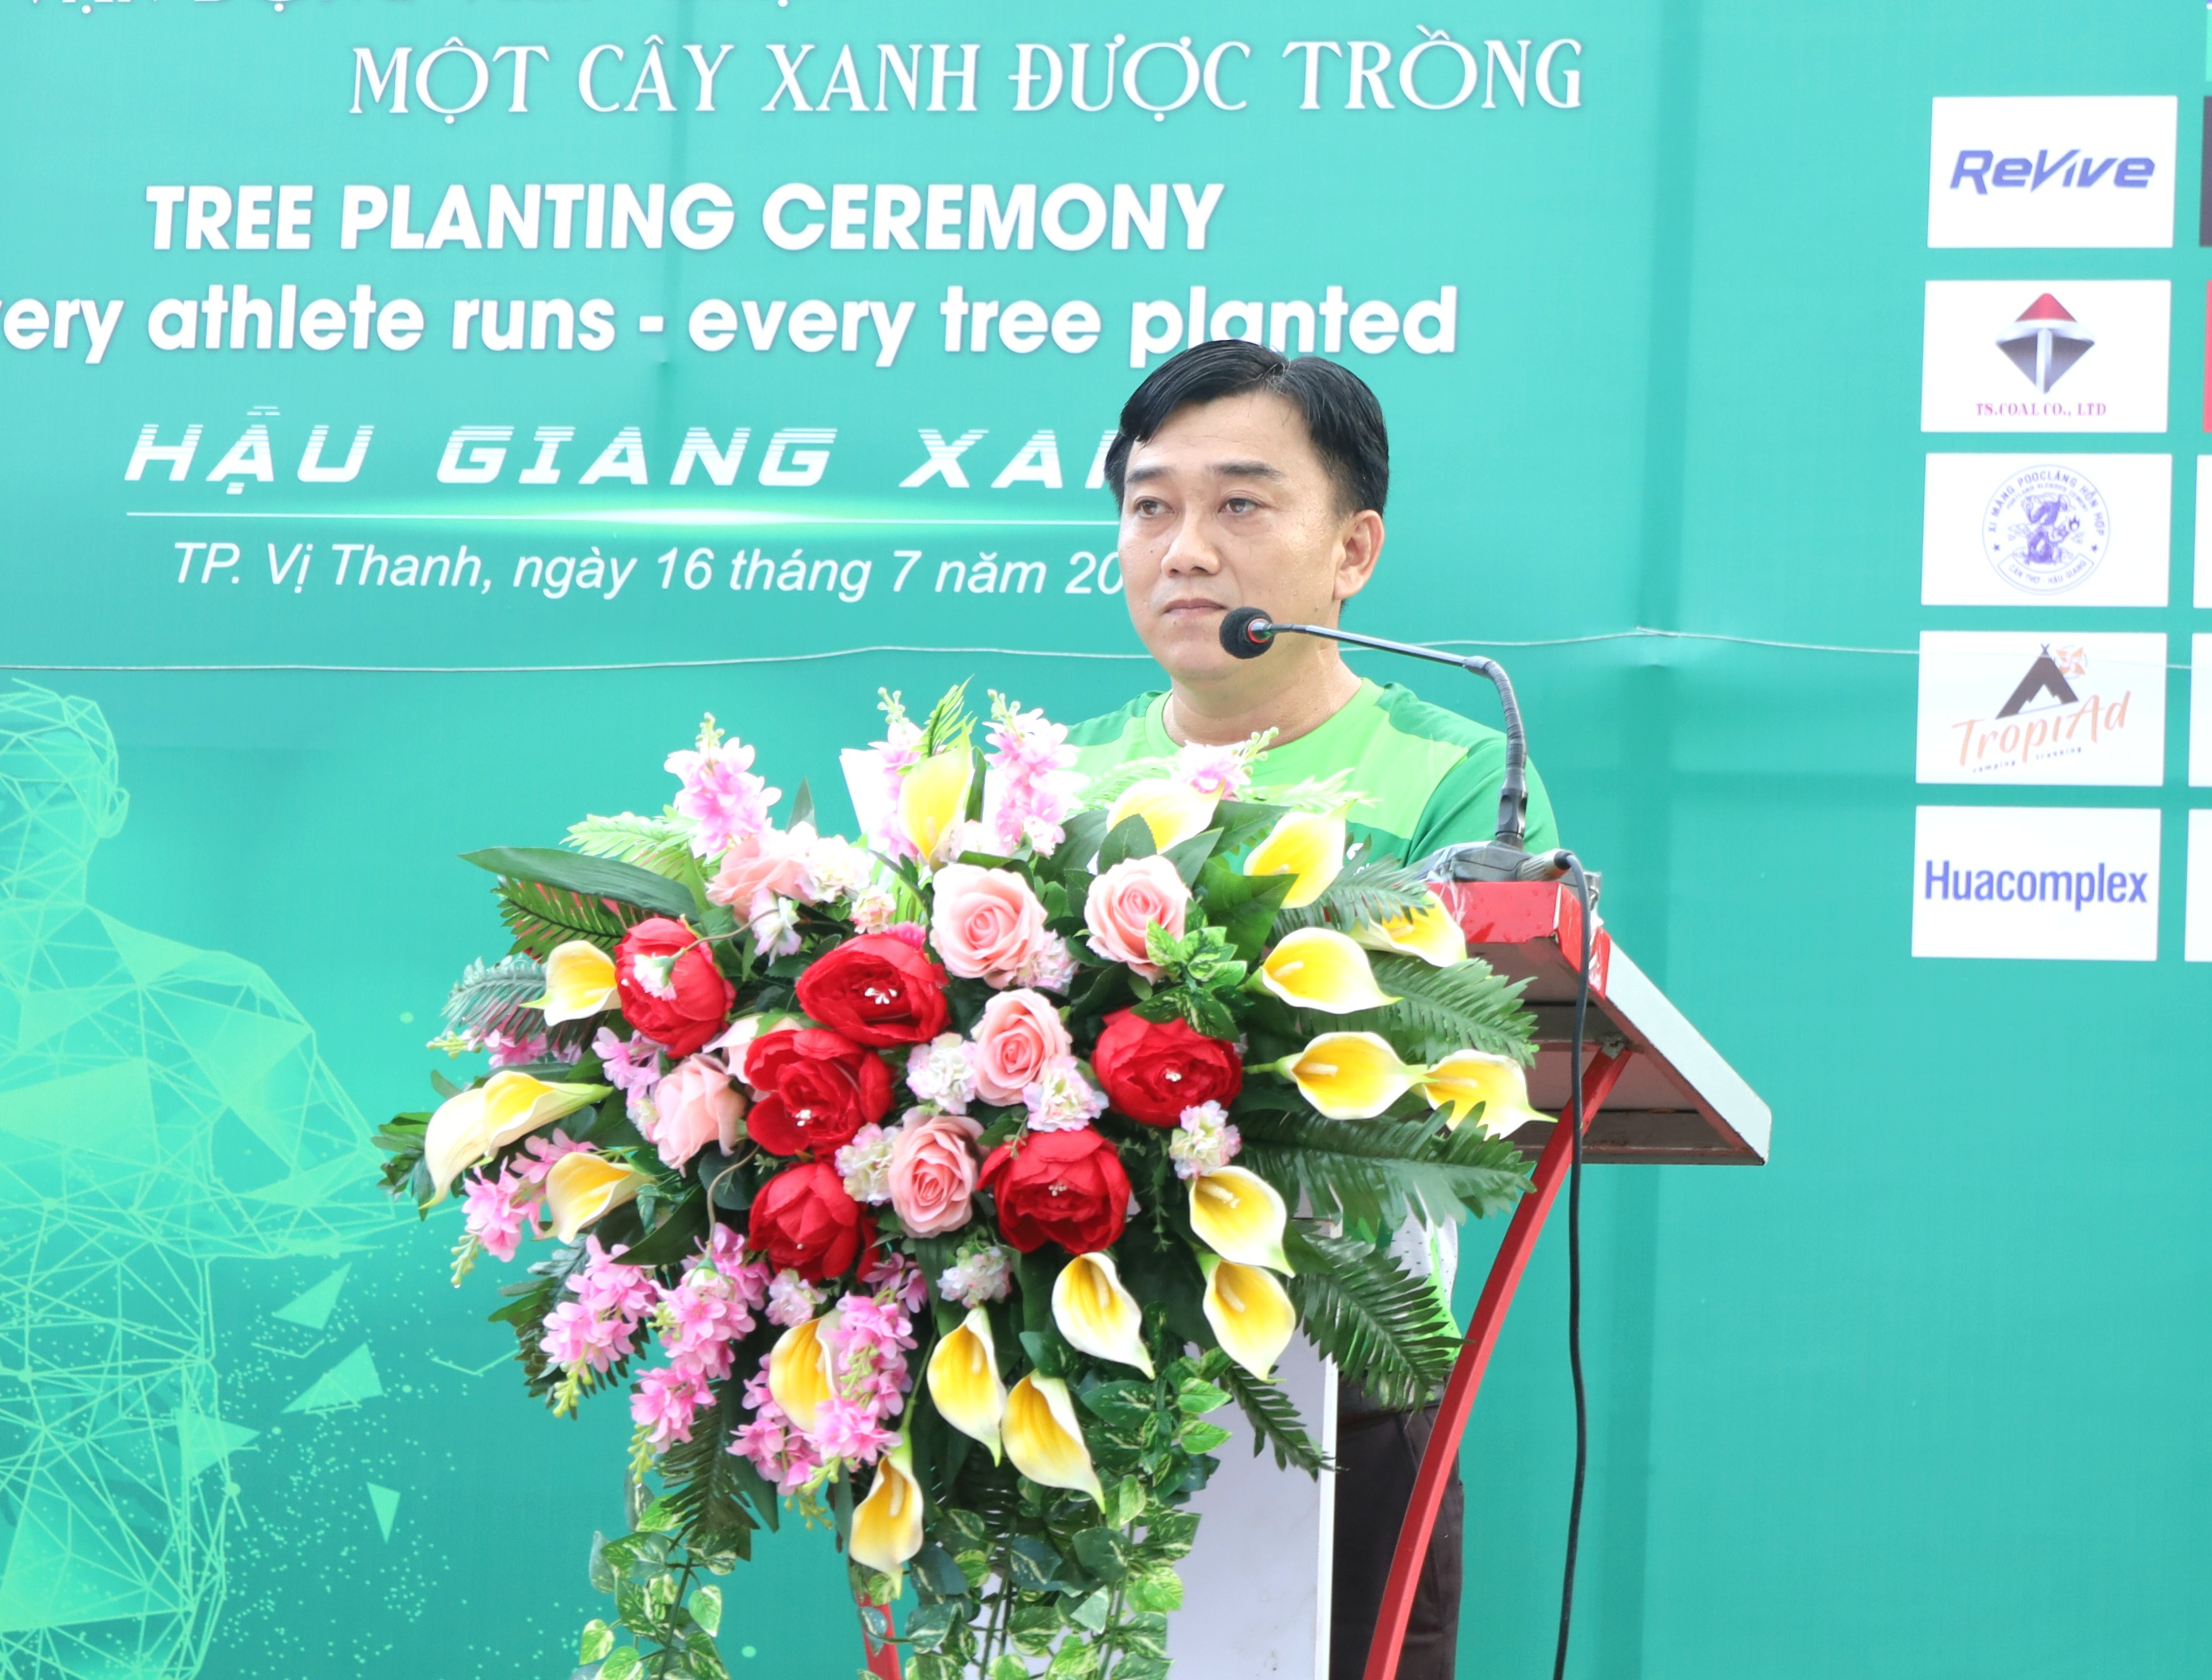 Ông Lưu Văn Vủ - Phó Chủ tịch UBND TP. Vị Thanh, tỉnh Hậu Giang phát biểu tại buổi lễ phát động trồng cây.